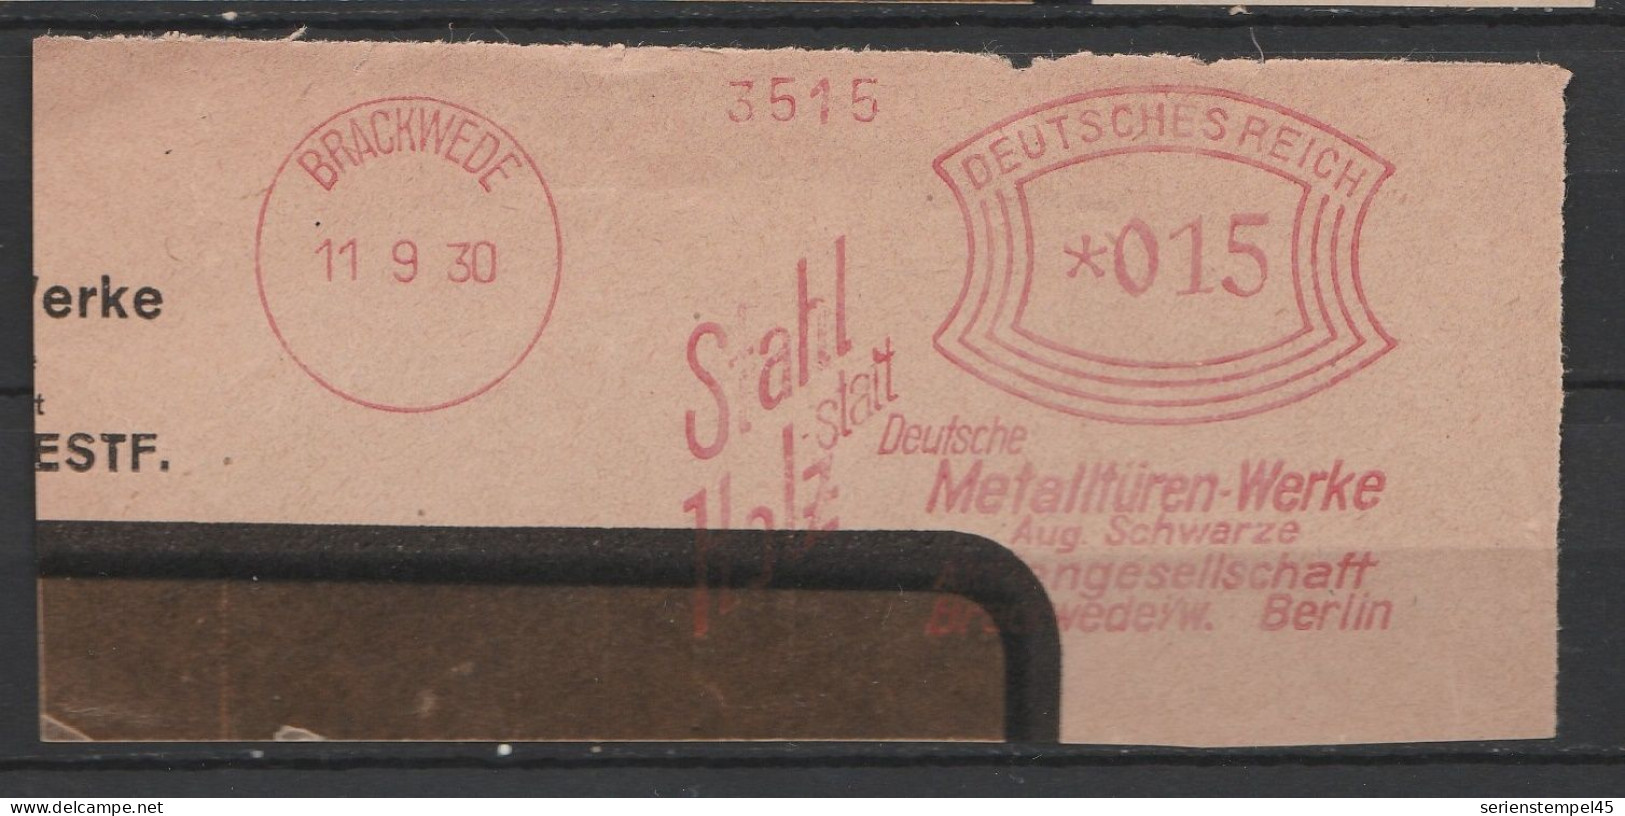 Deutsches Reich Briefstück Mit Freistempel Brackewede 1930 Deutsche Metalltüren Werke Aug. Schwarze - Machines à Affranchir